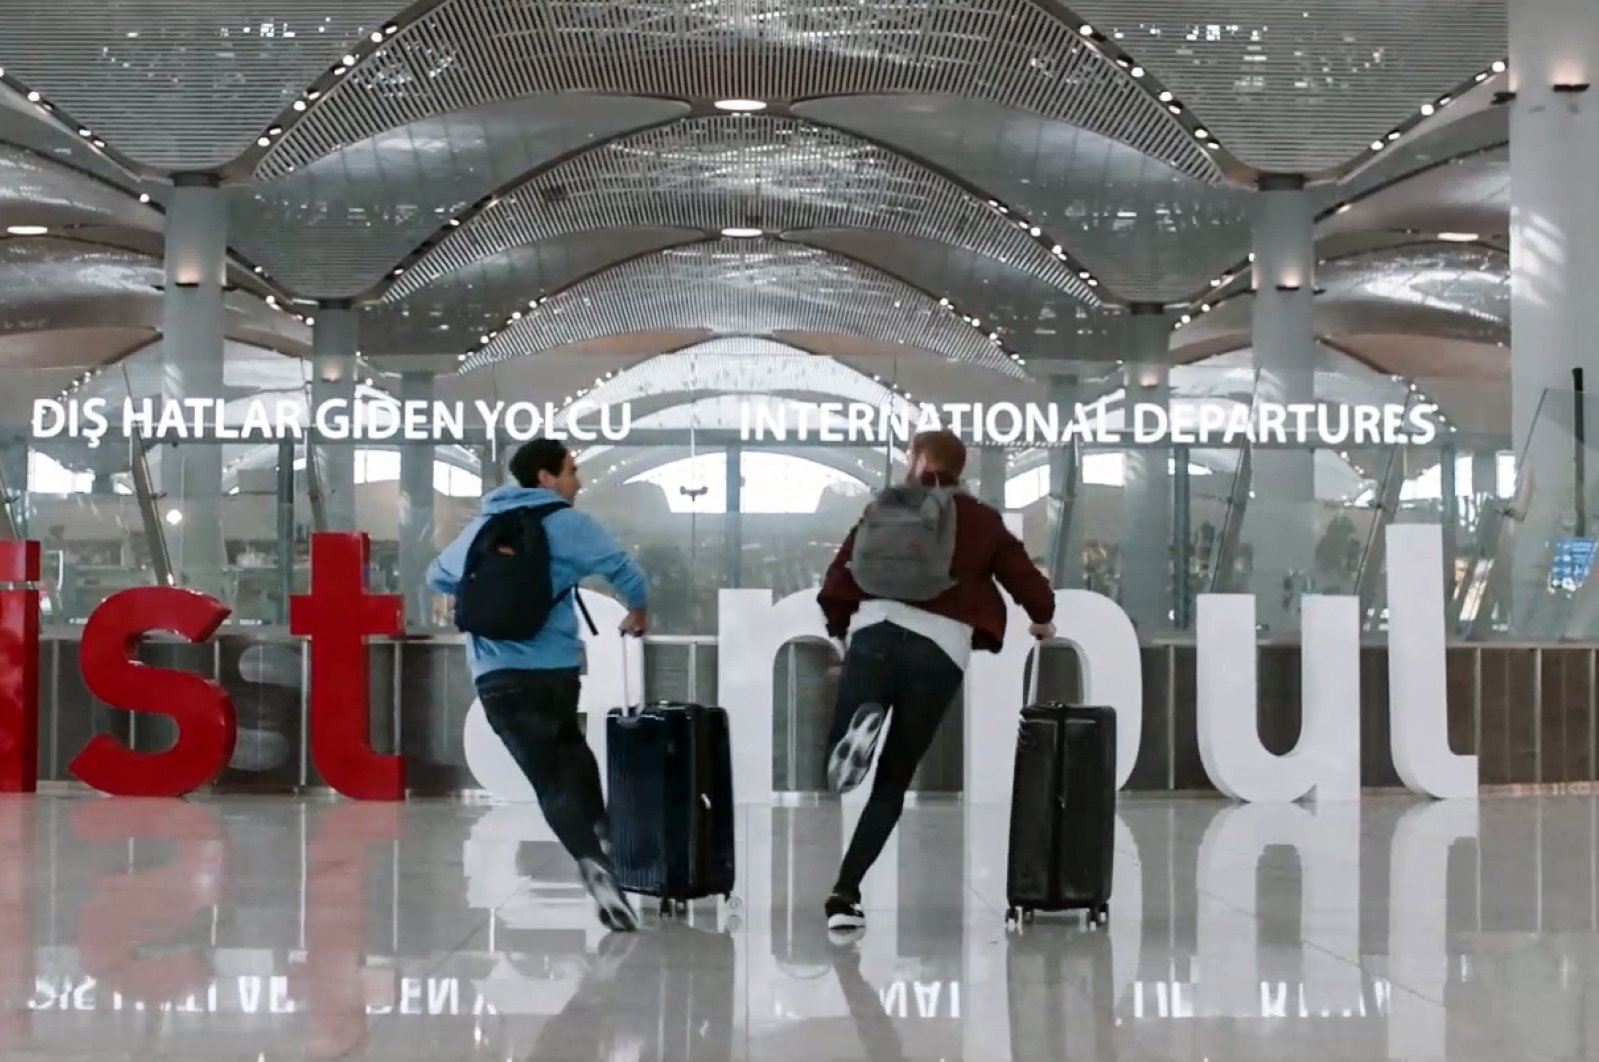 Türk Hava Yolları, dolandırıcı Zack King’in yer aldığı ilk reklam filmini gösterdi